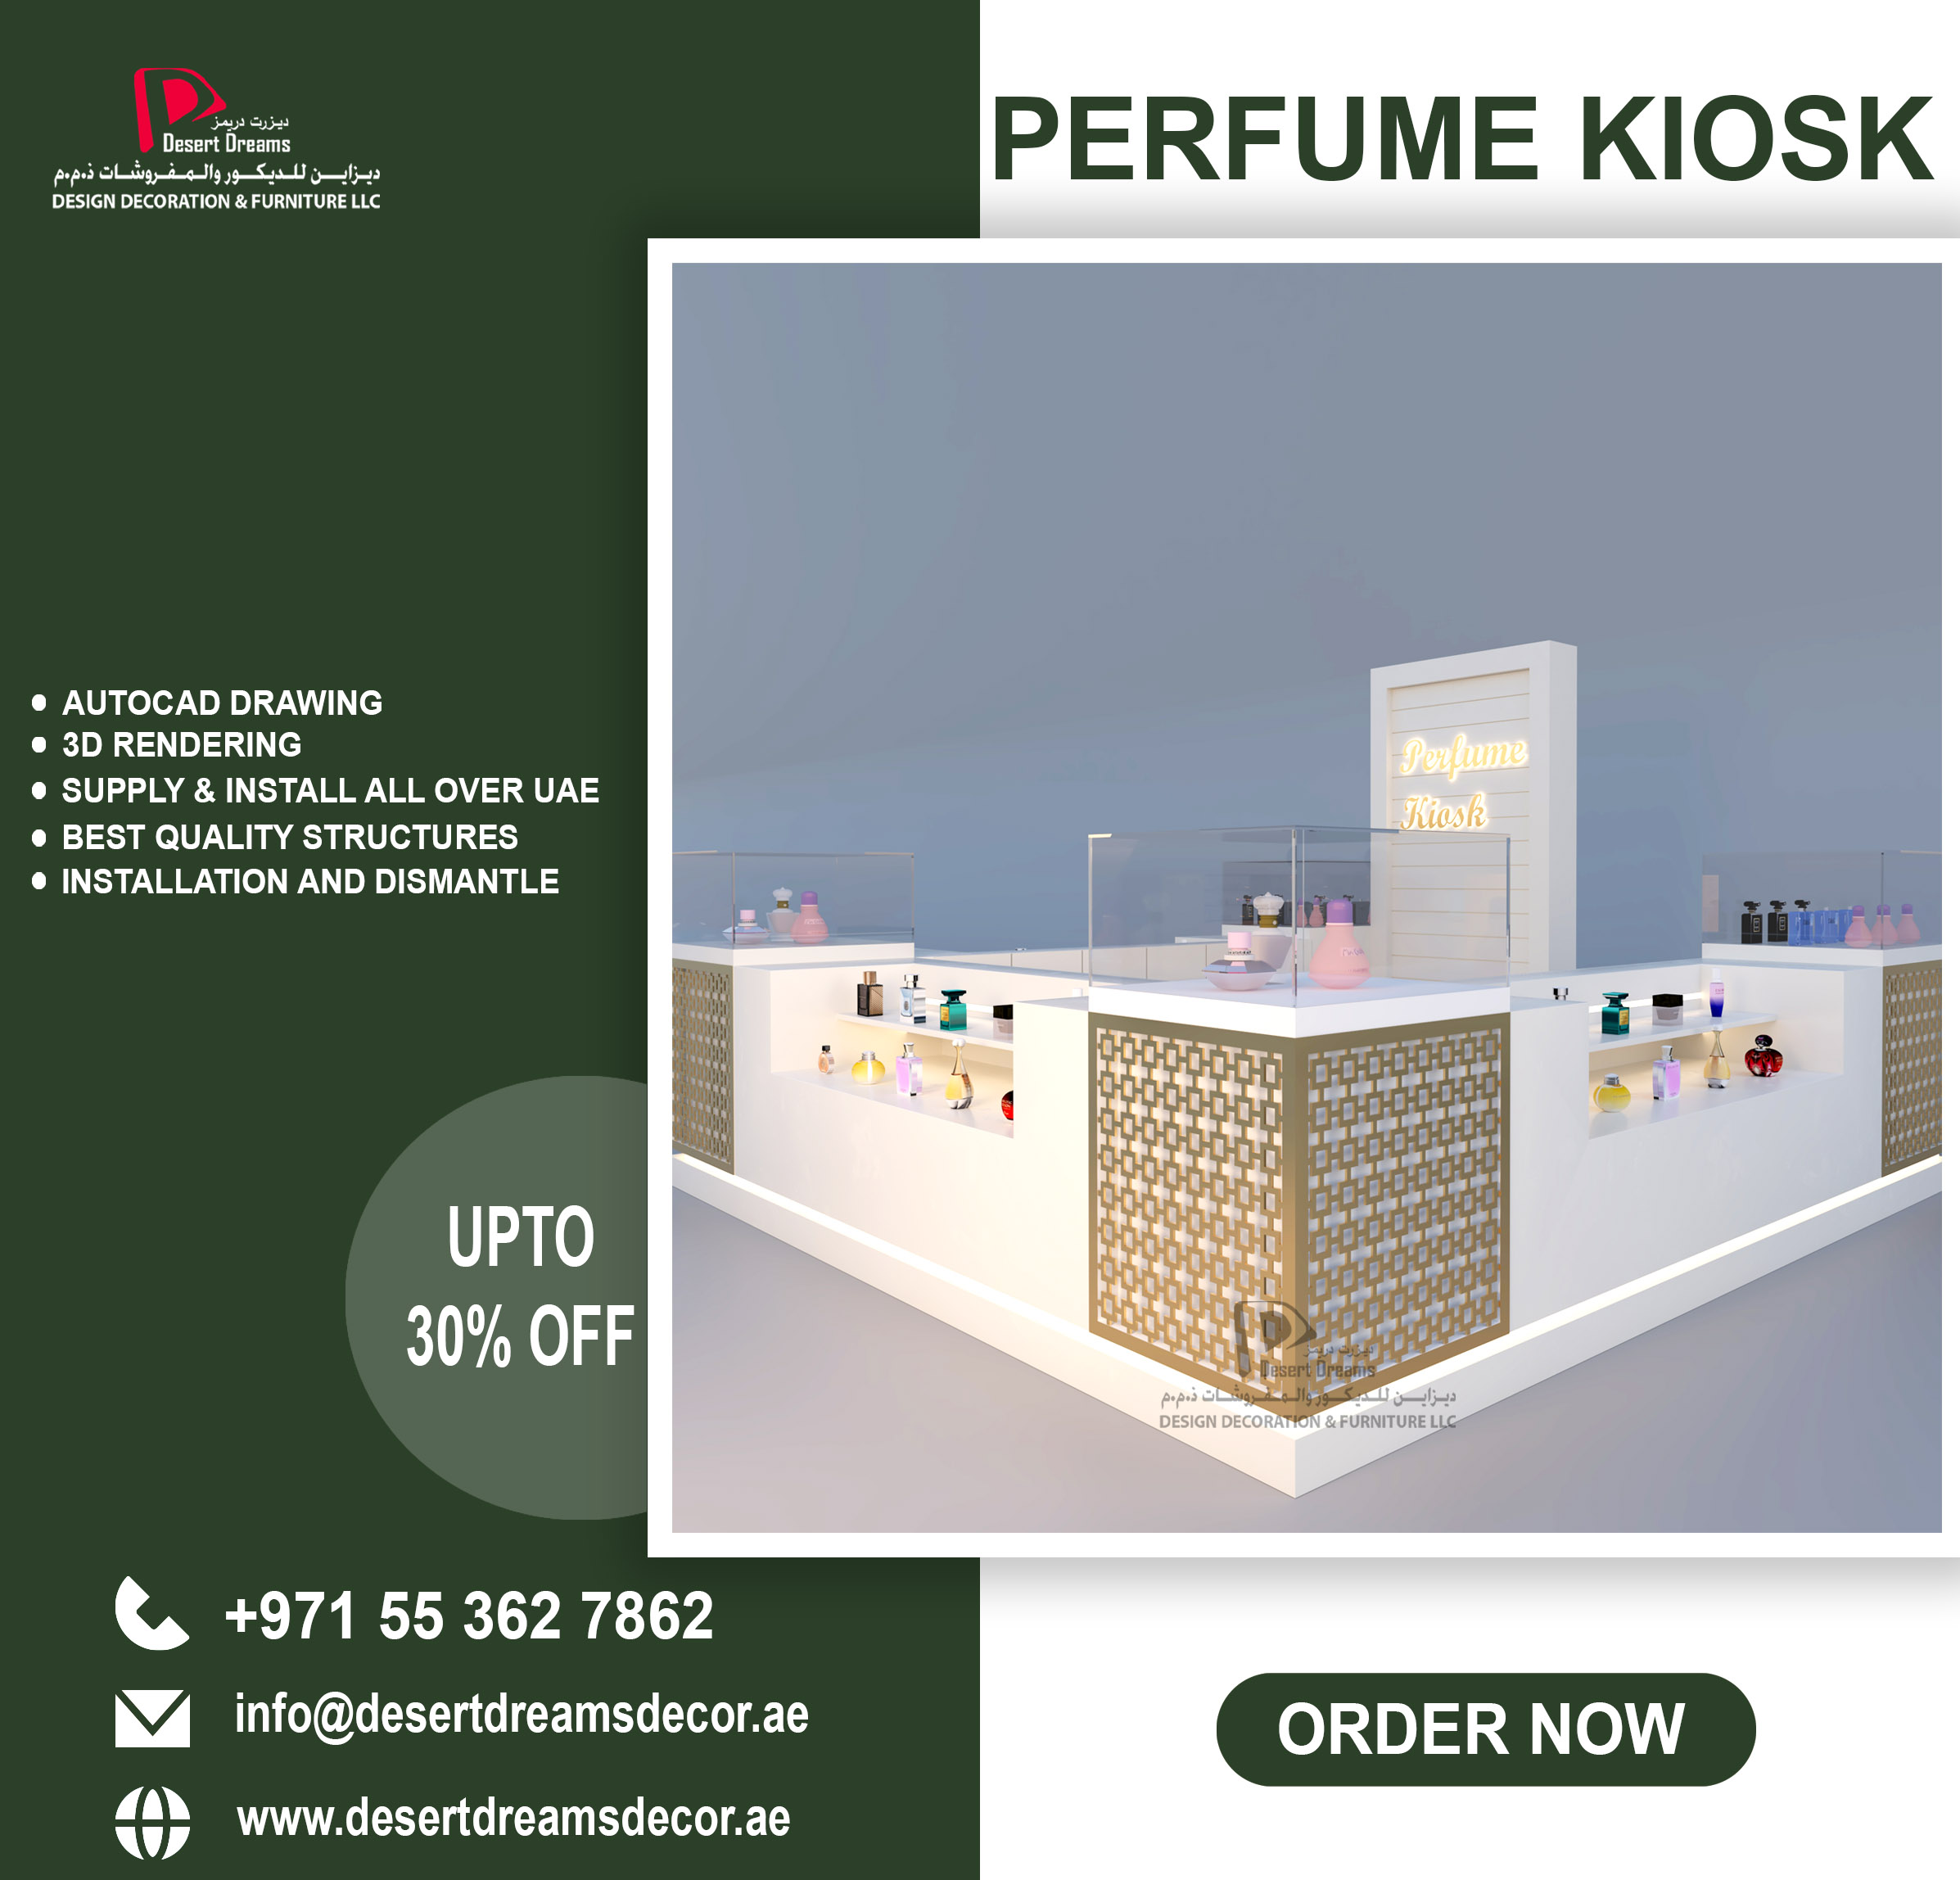 Perfume Kiosk in Uae.jpg